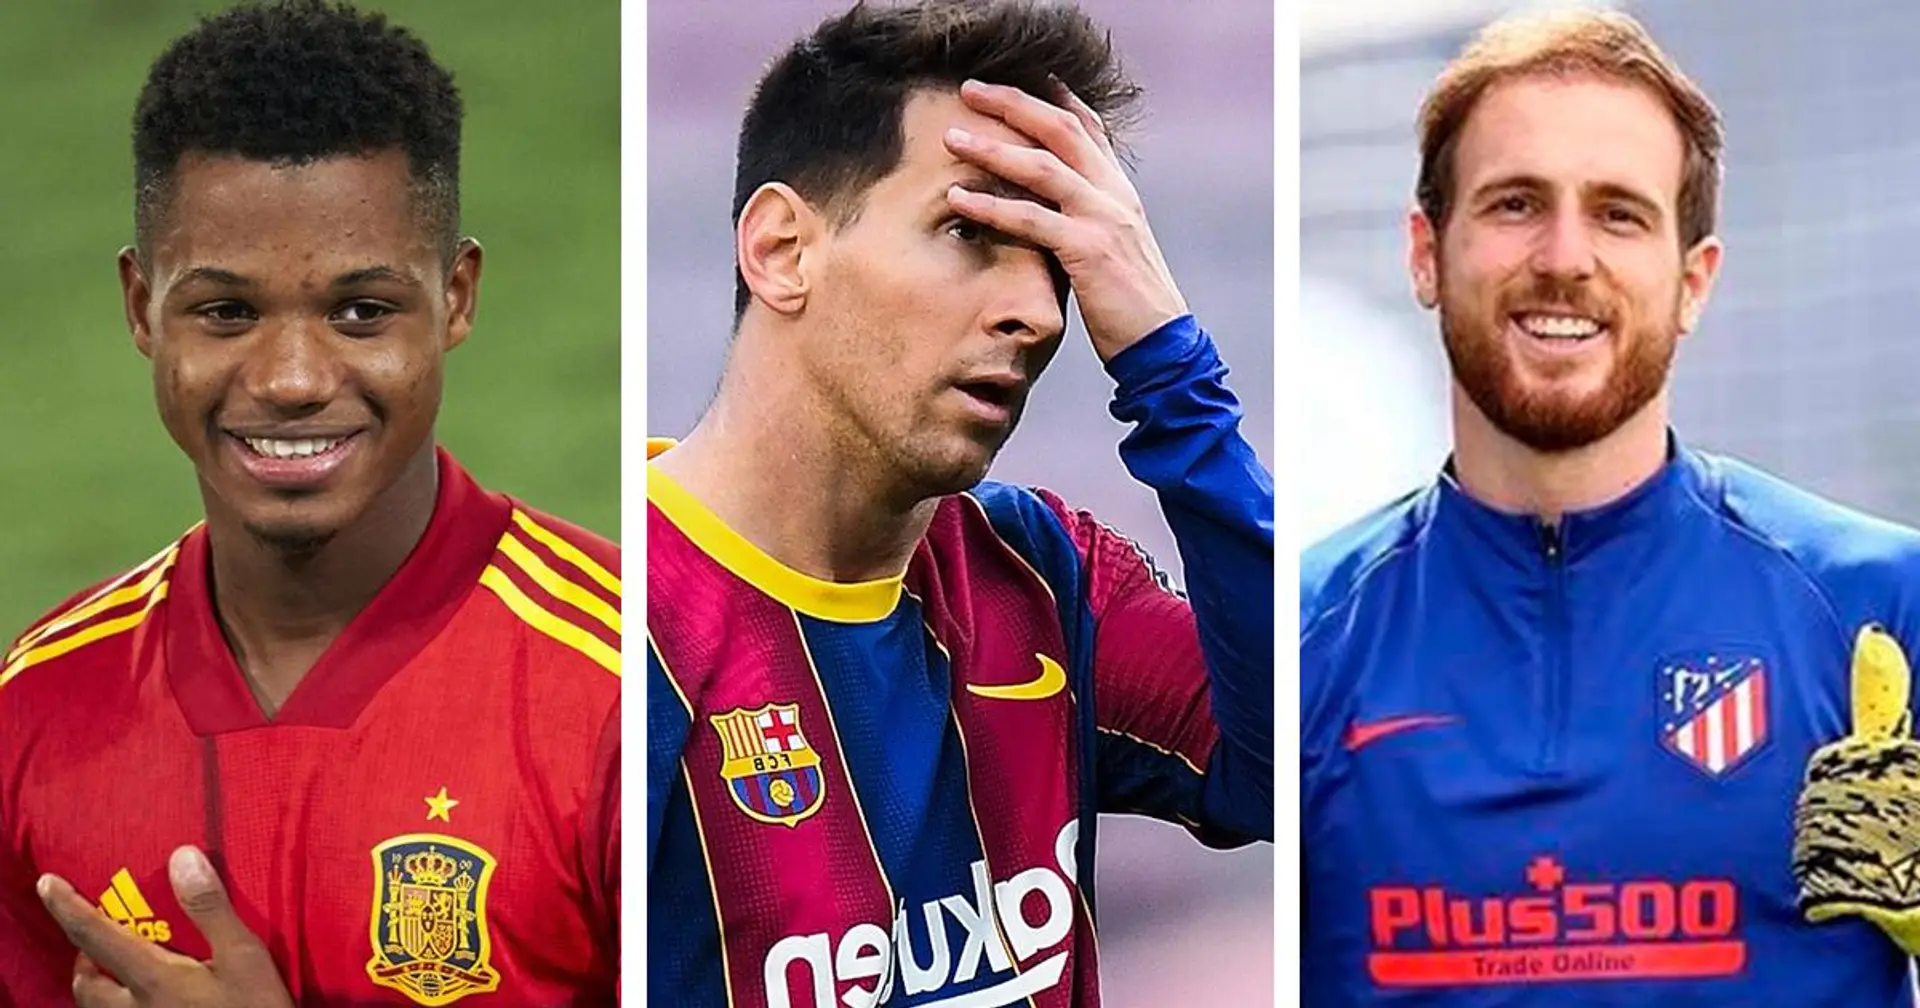 Le Top 10 des joueurs de la Liga les plus chers révélé: Messi seulement 5e